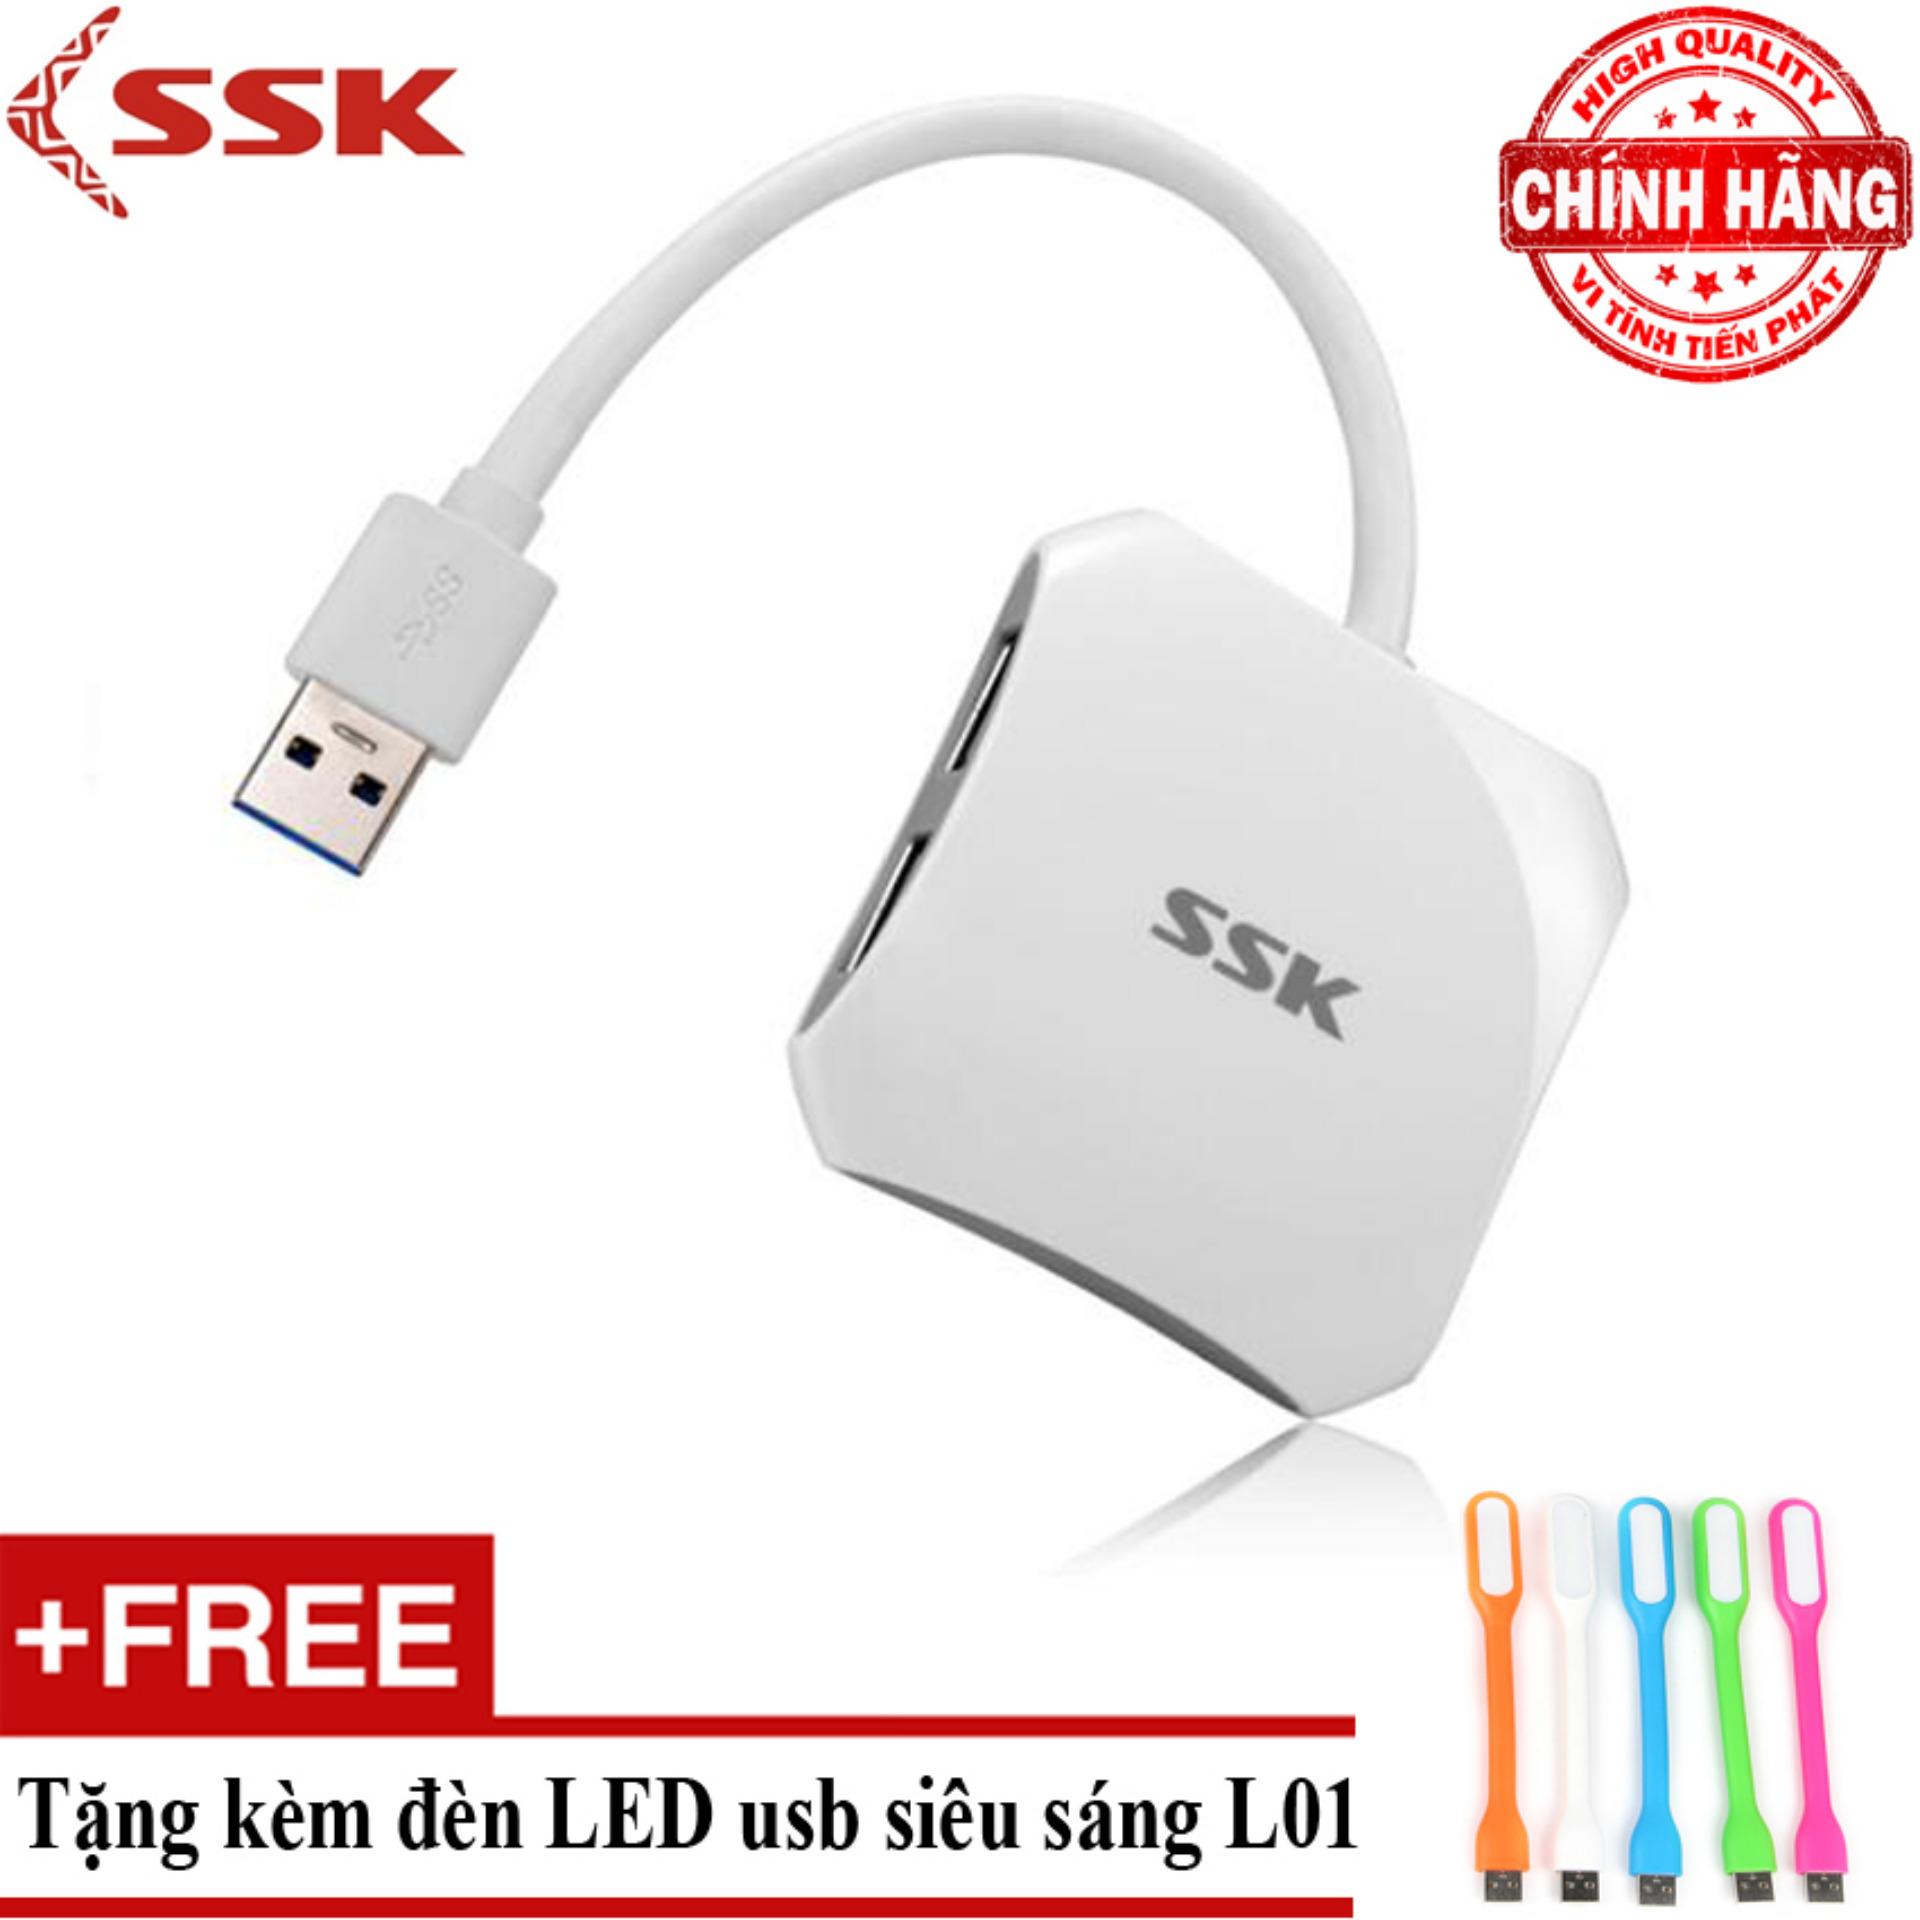 Hub Chia USB 3.0 thành 4 Cổng SSK SHU300 + Tặng đèn Led usb L01